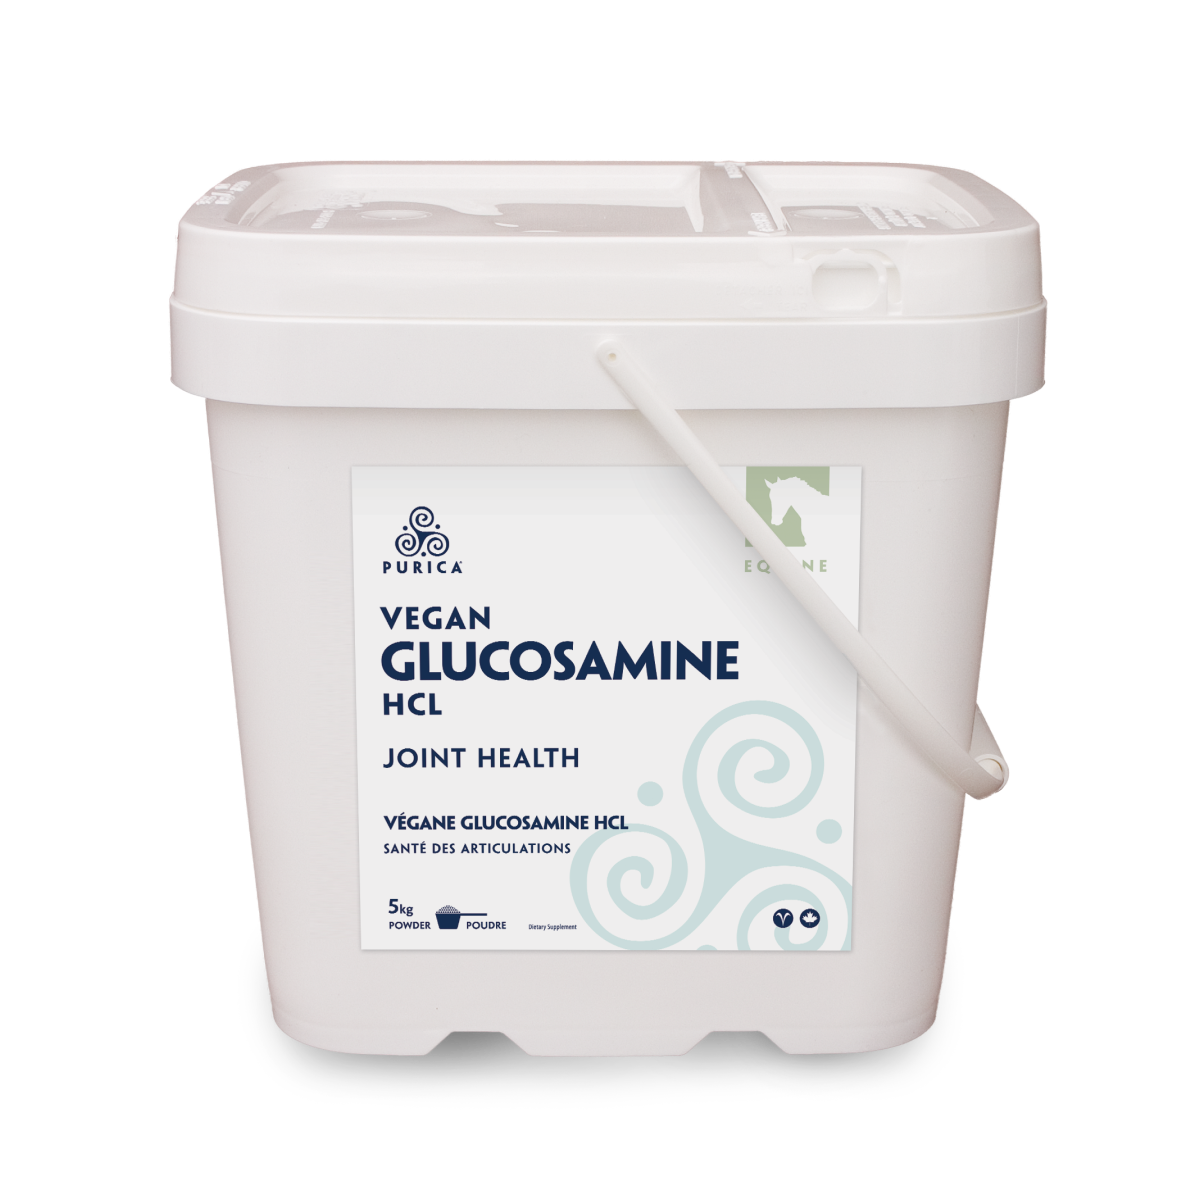 Equine Vegan Glucosamine